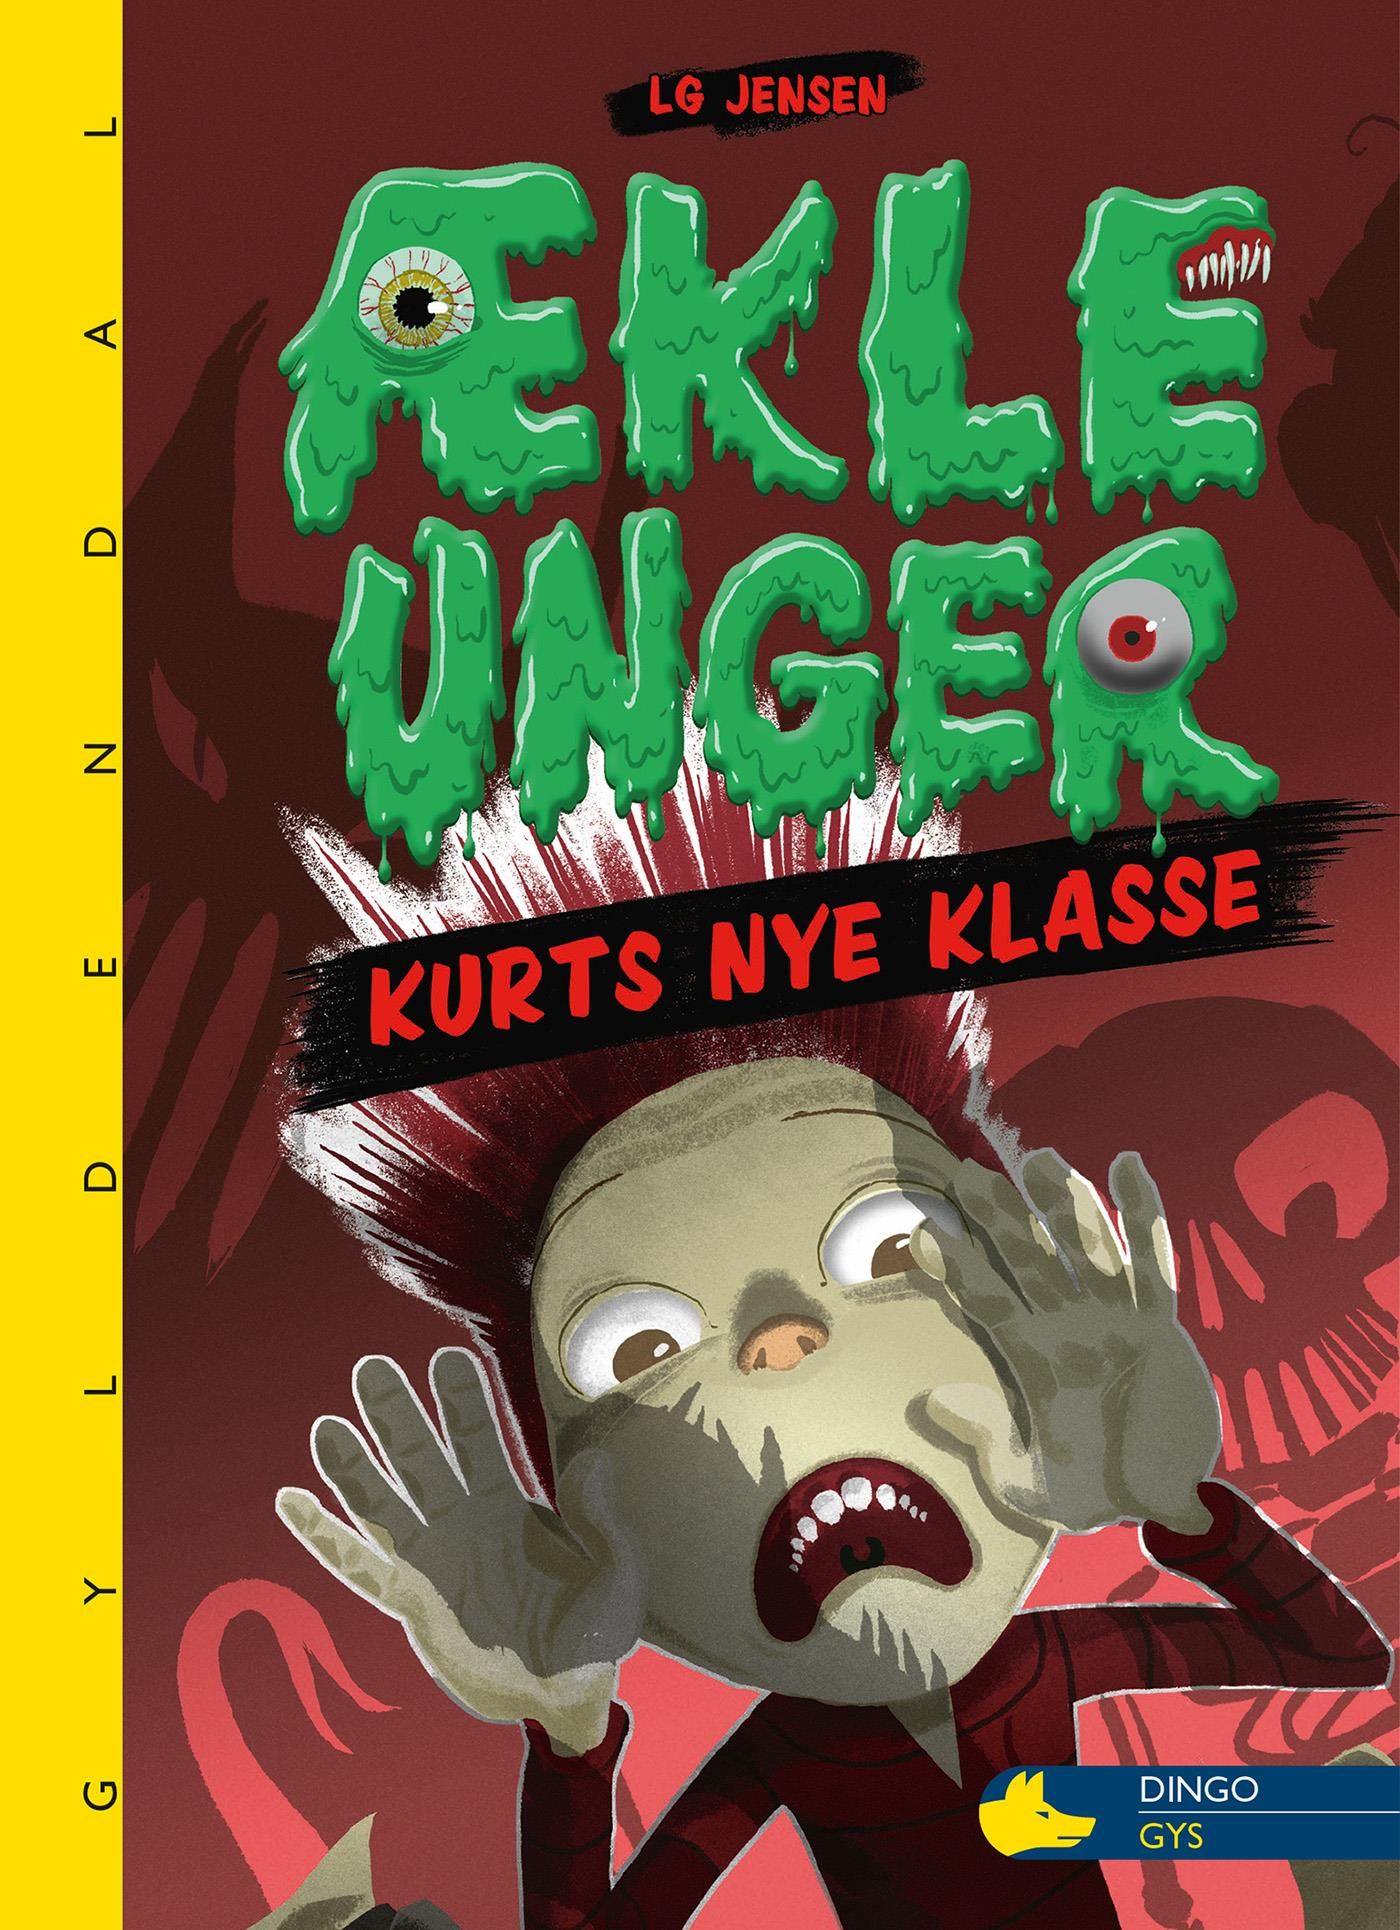 ÆKLE UNGER - Kurts nye klasse, e-bog af LG Jensen